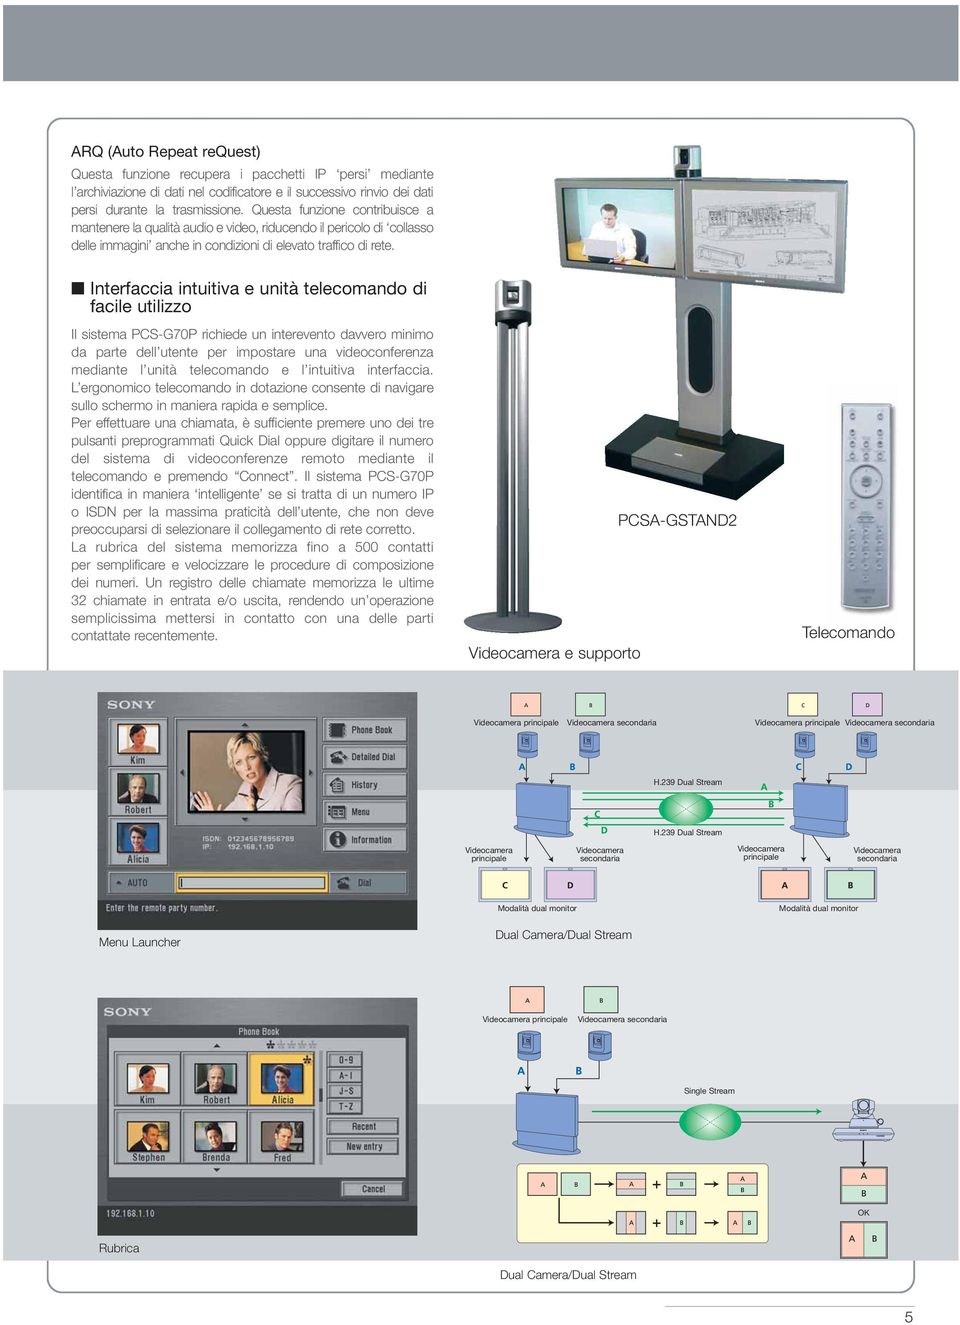 Interfaccia intuitiva e unità telecomando di facile utilizzo Il sistema PCS-G70P richiede un interevento davvero minimo da parte dell utente per impostare una videoconferenza mediante l unità